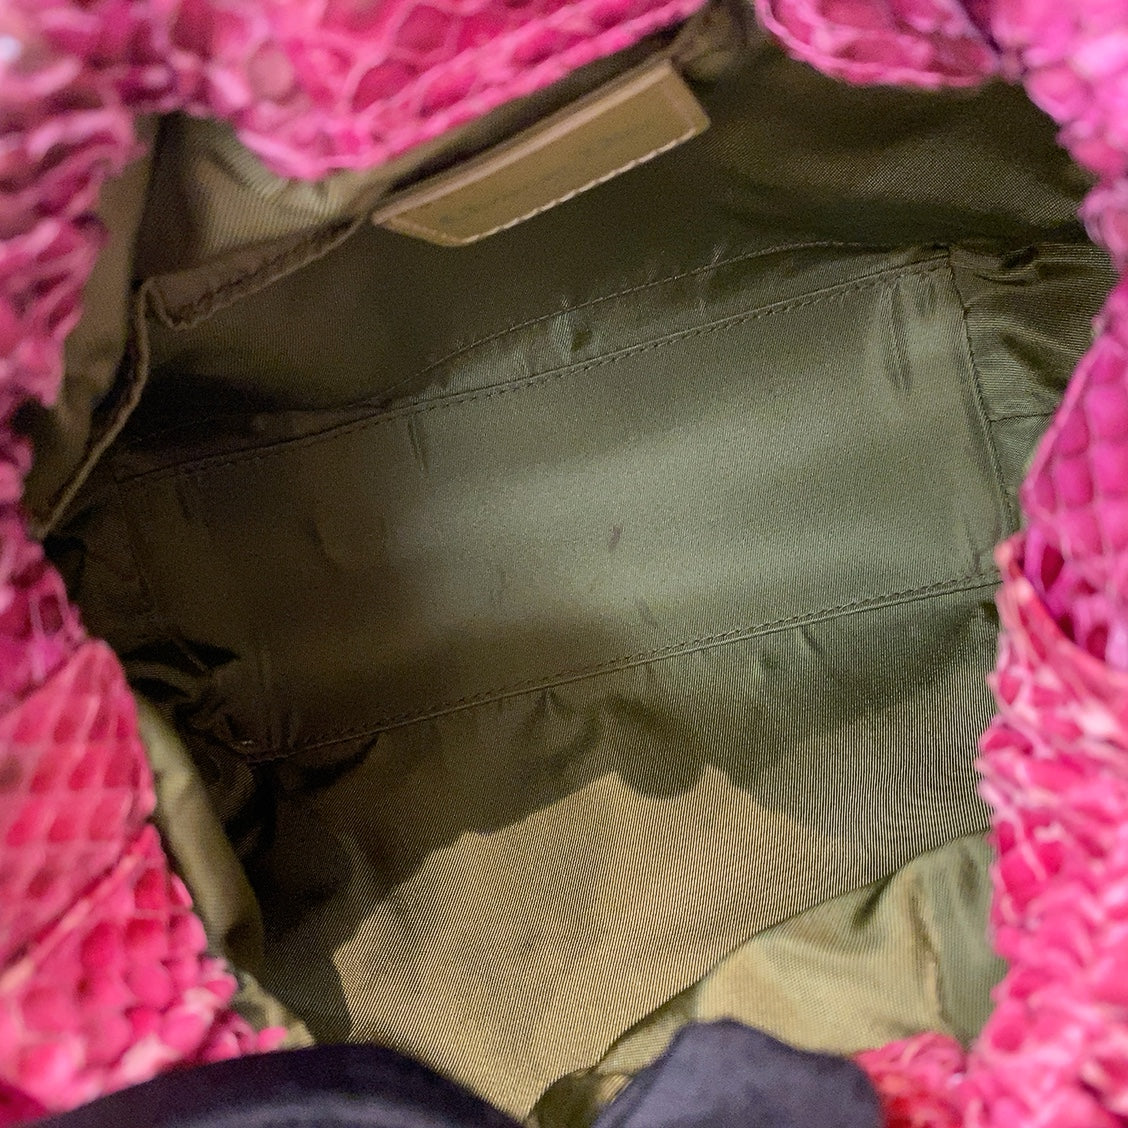 Dior Vintage Malice Handle Bag